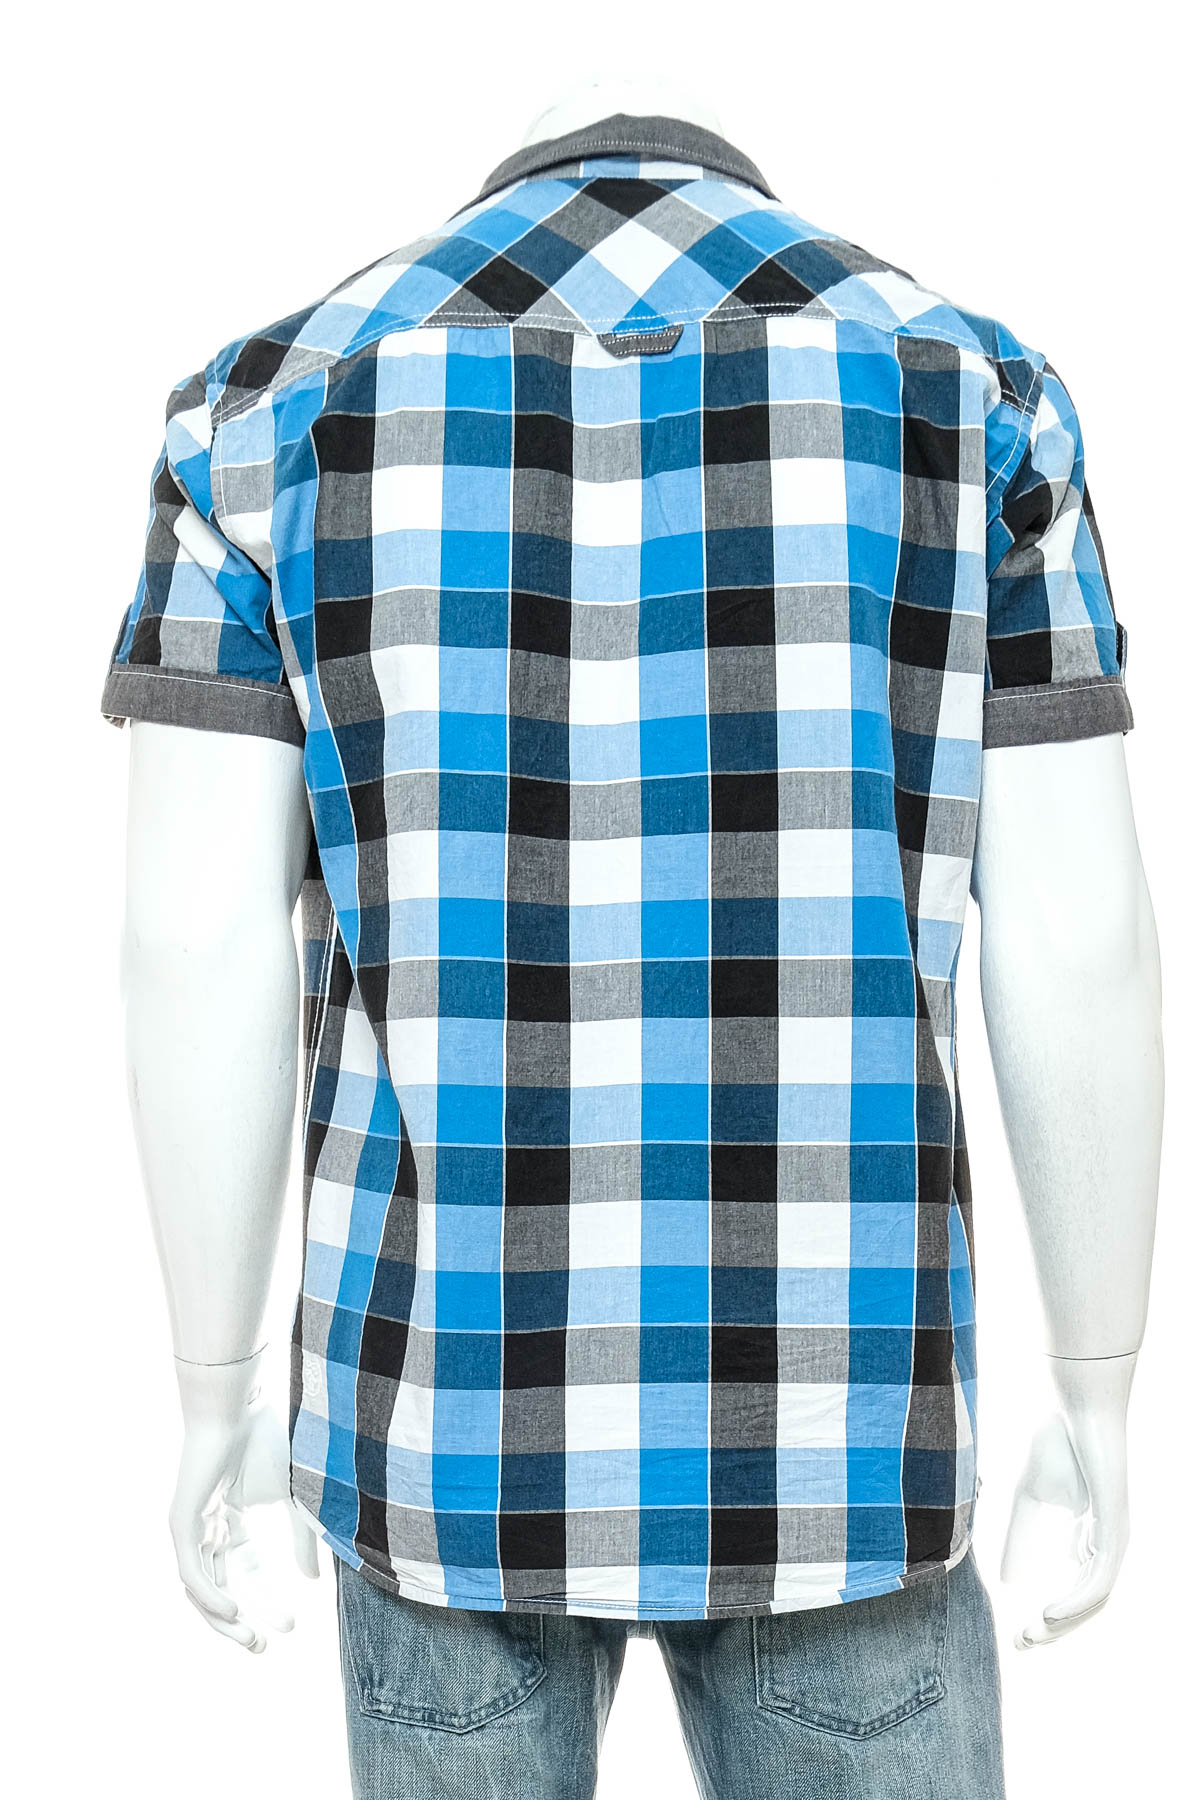 Ανδρικό πουκάμισο - TOM TAILOR Denim - 1